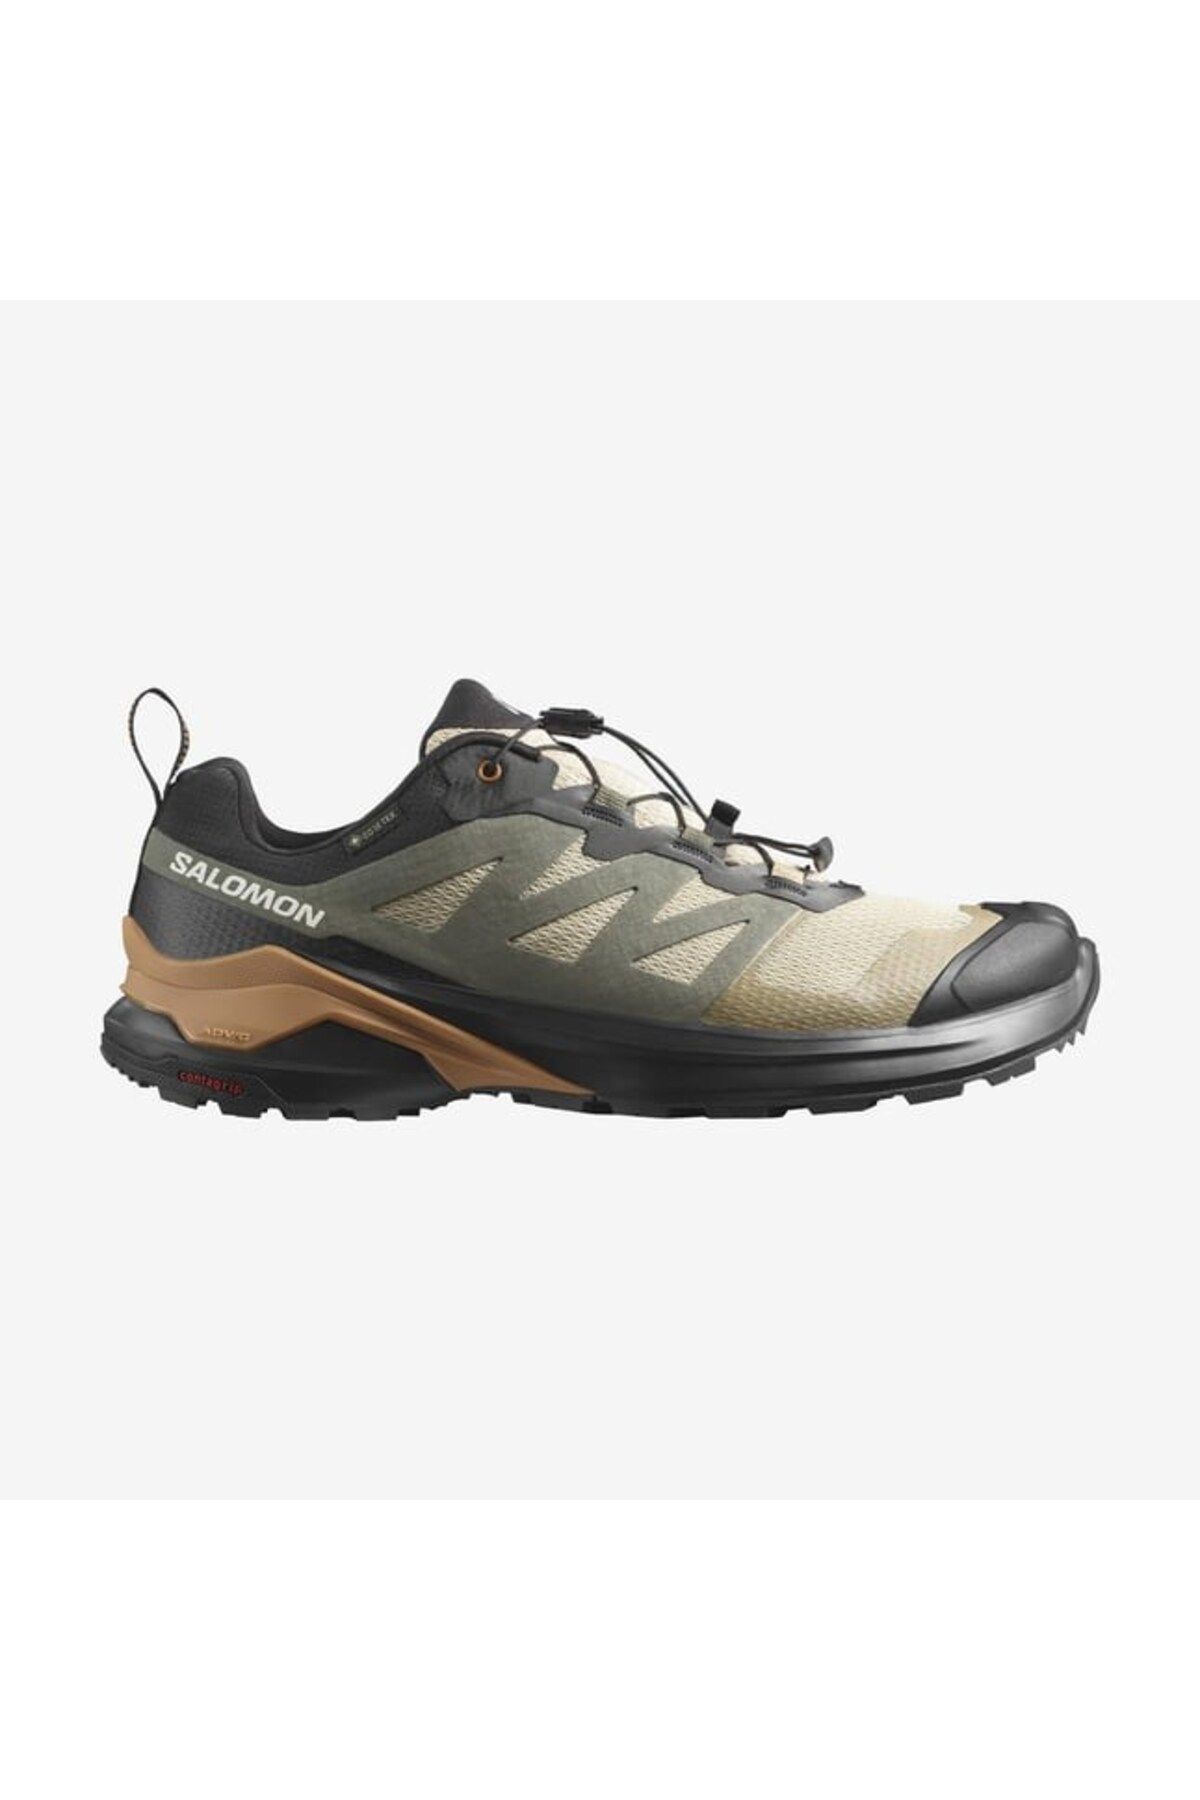 Salomon X-ADVENTURE GTX Erkek Koşu Ayakkabısı L47321300